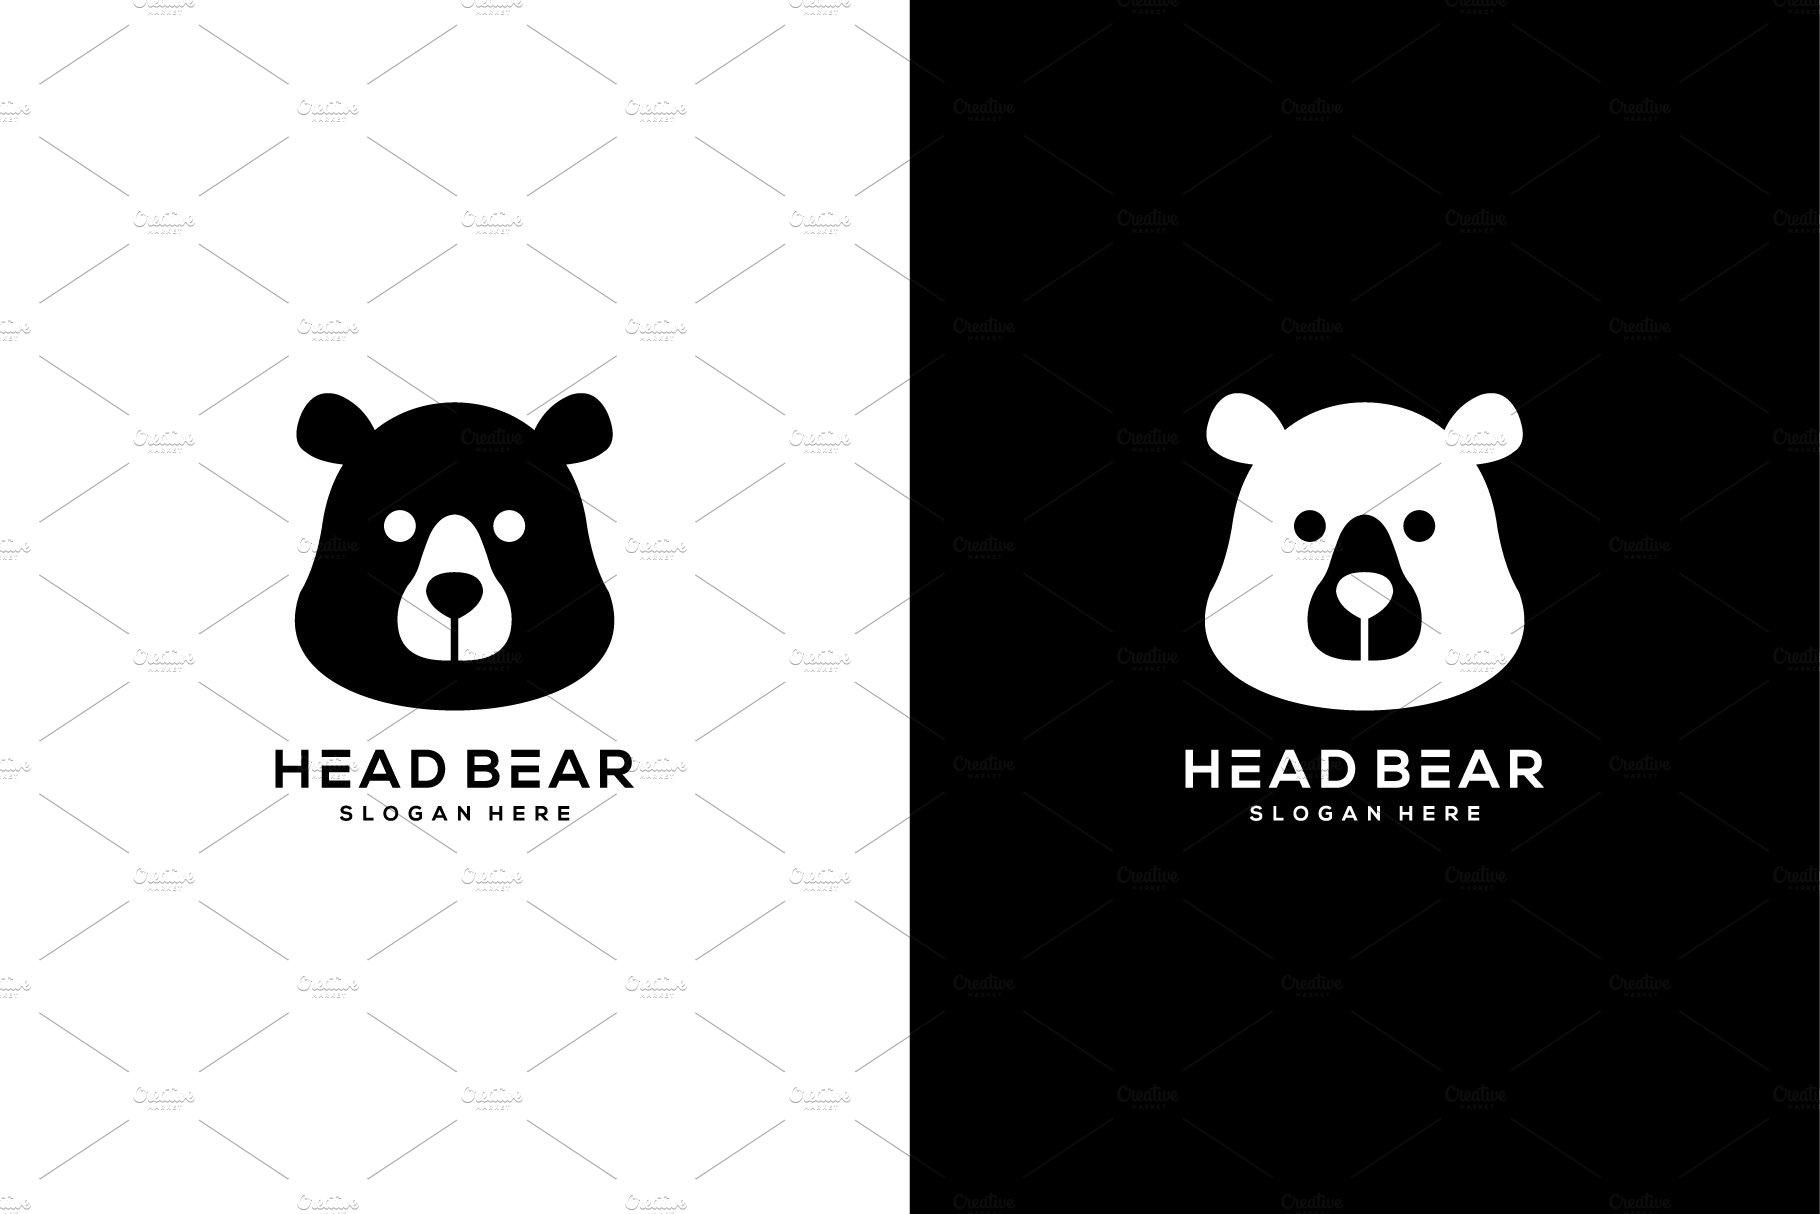 head bear logo vector design cover image.